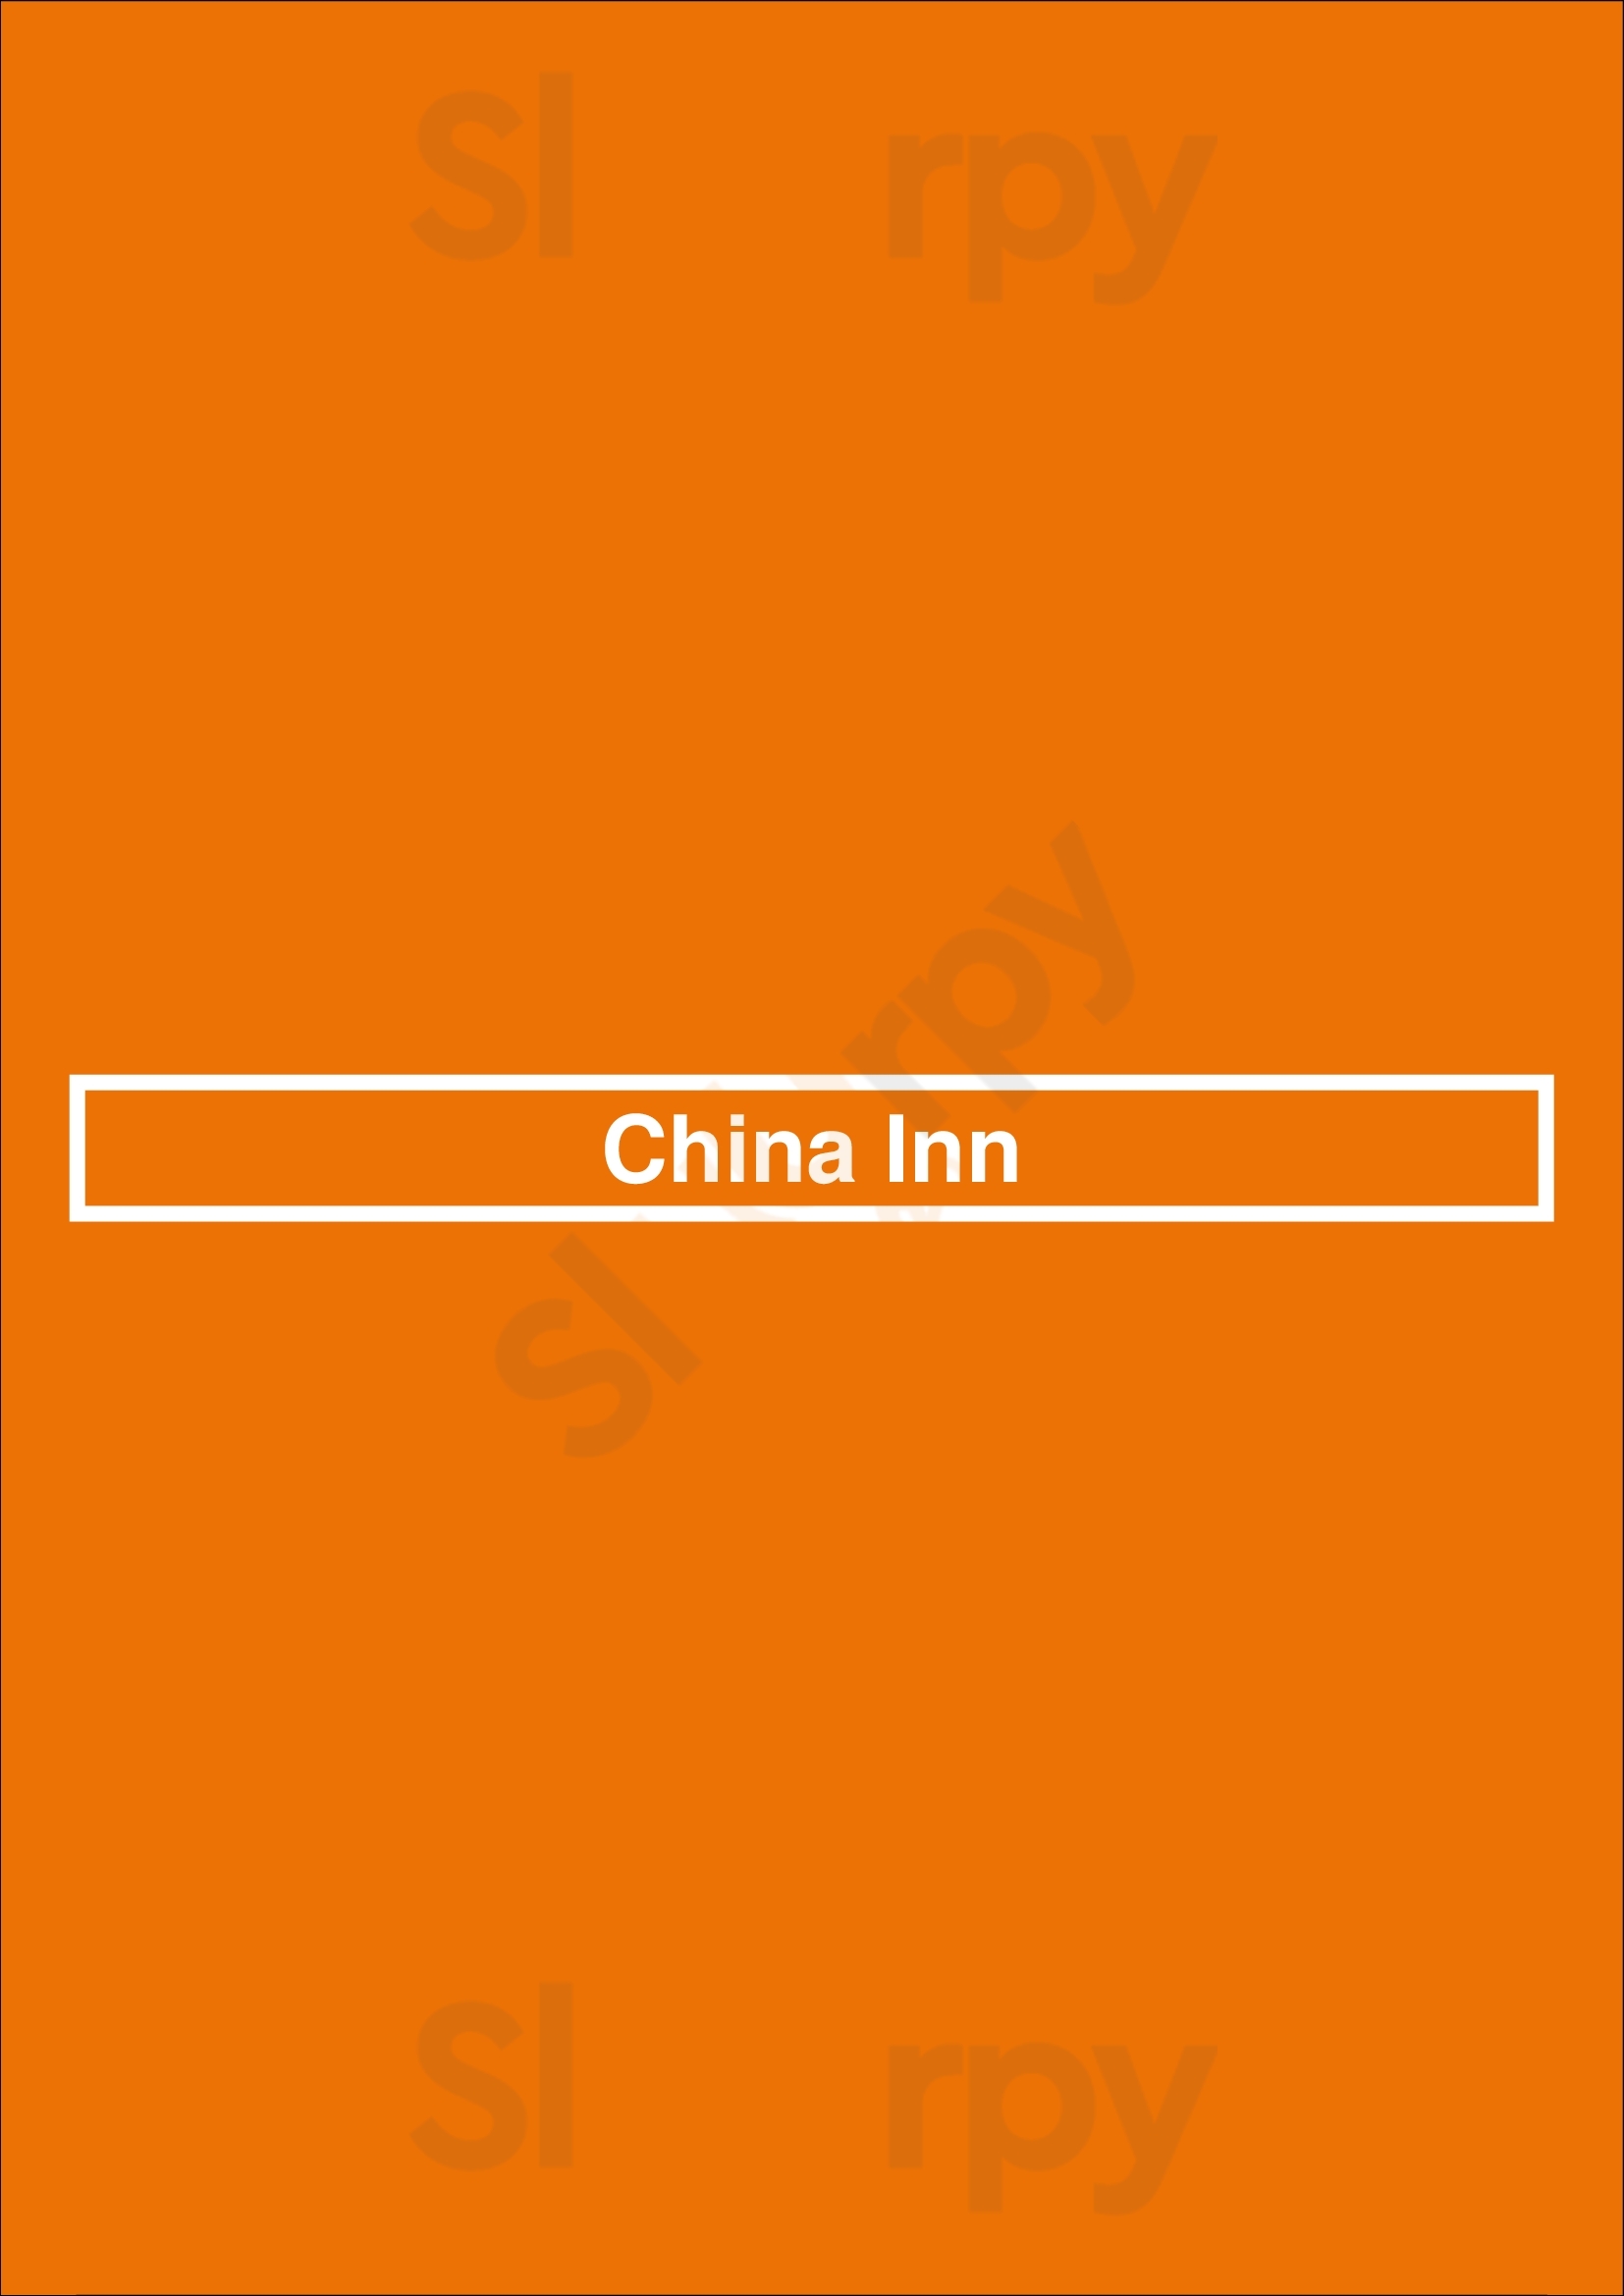 China Inn Coeur d'Alene Menu - 1